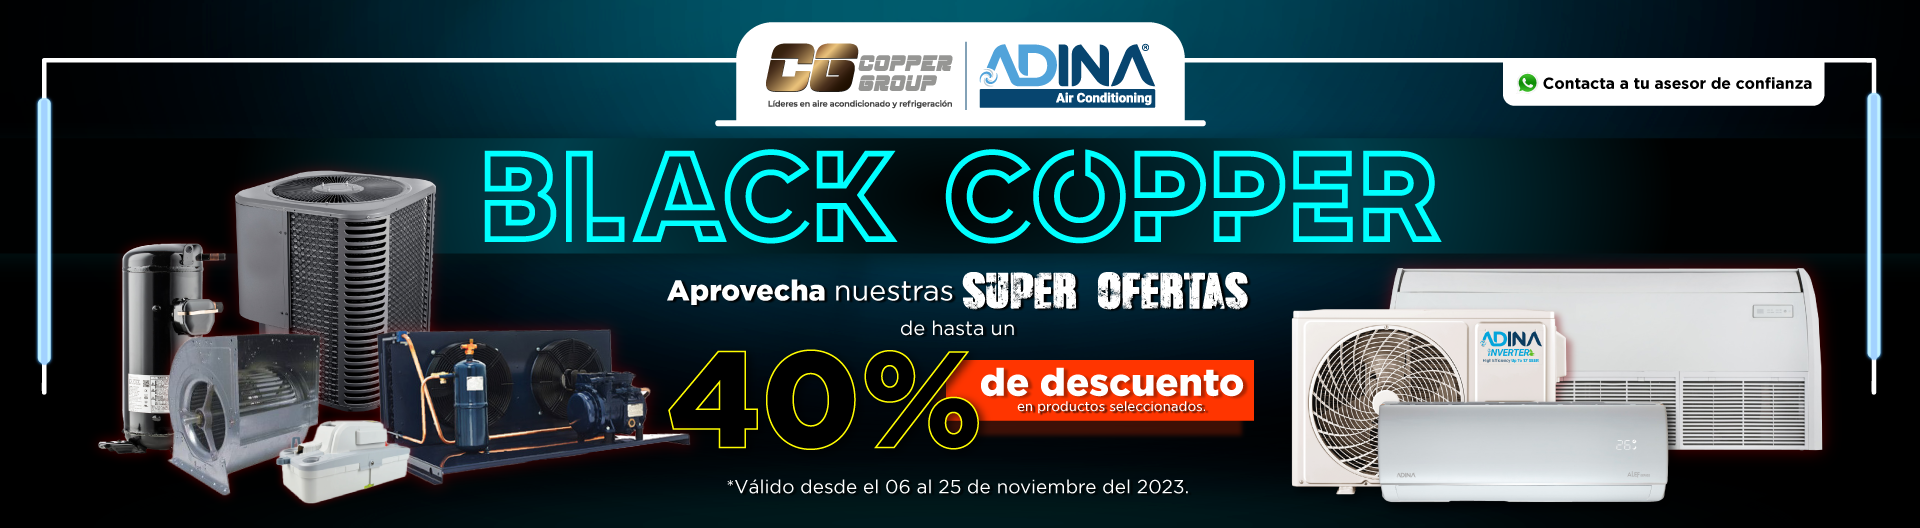 black friday copper adina